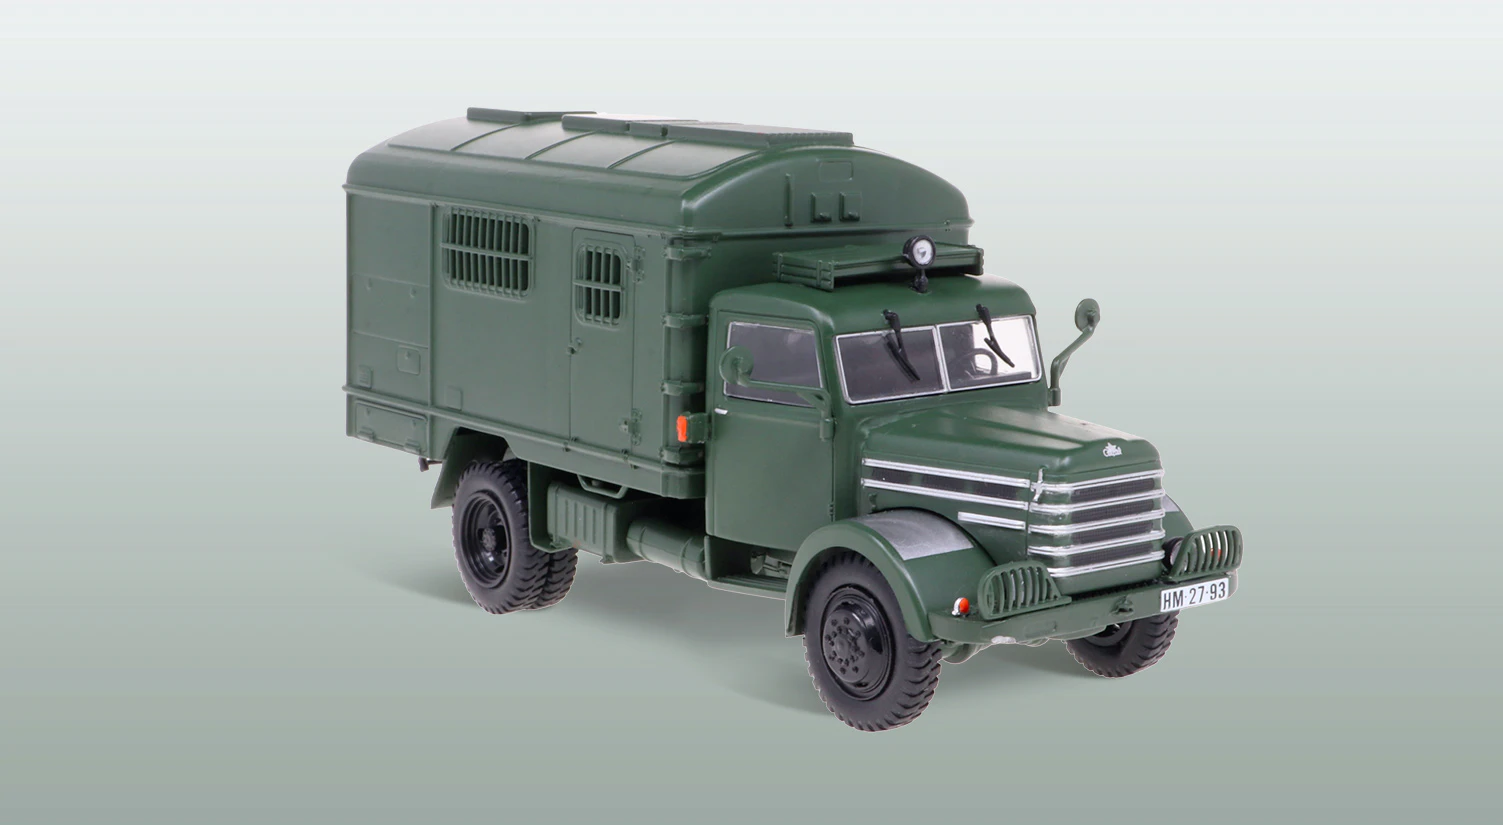 CSEPEL D-344 + Füzet - A Magyar Honvédség jelentős mennyiségben vásárolt Csepel D-344-s teherautókat egy időben, amelyet eredetileg 1963-ban, a Lipcsei Vásáron mutattak be. Az összkerékhajtású teherautó egészen 1975-ig volt sorozatgyártásban, ennek köszönhetően még napjainkban is akadnak belőle jó állapotban megőrzött példányok.  